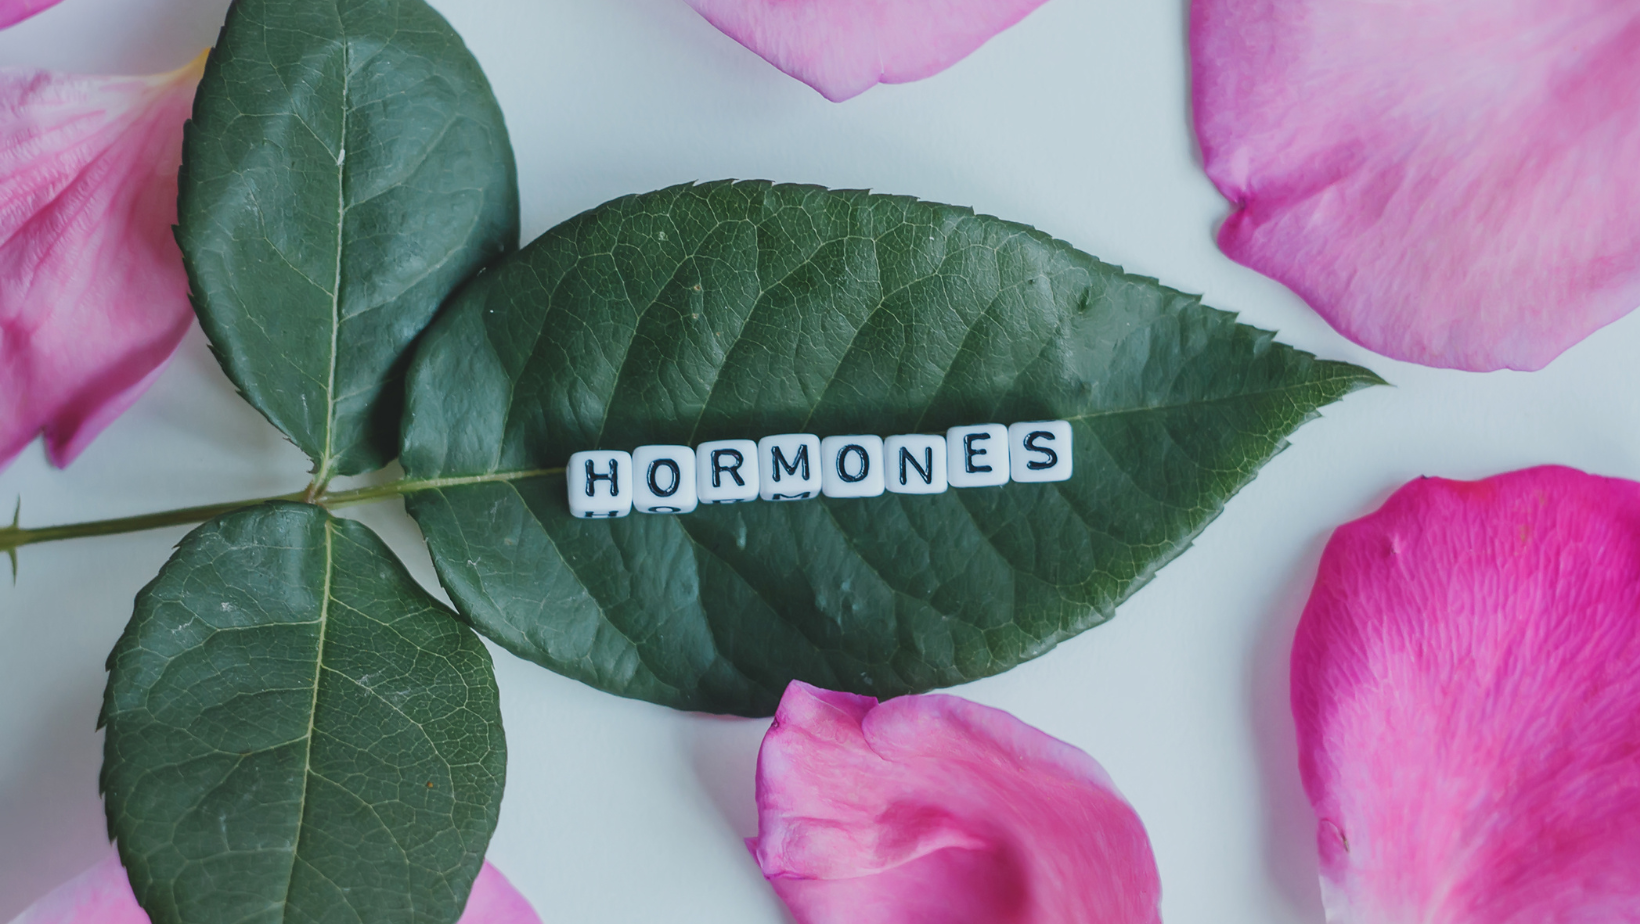 Supplements to balance hormones